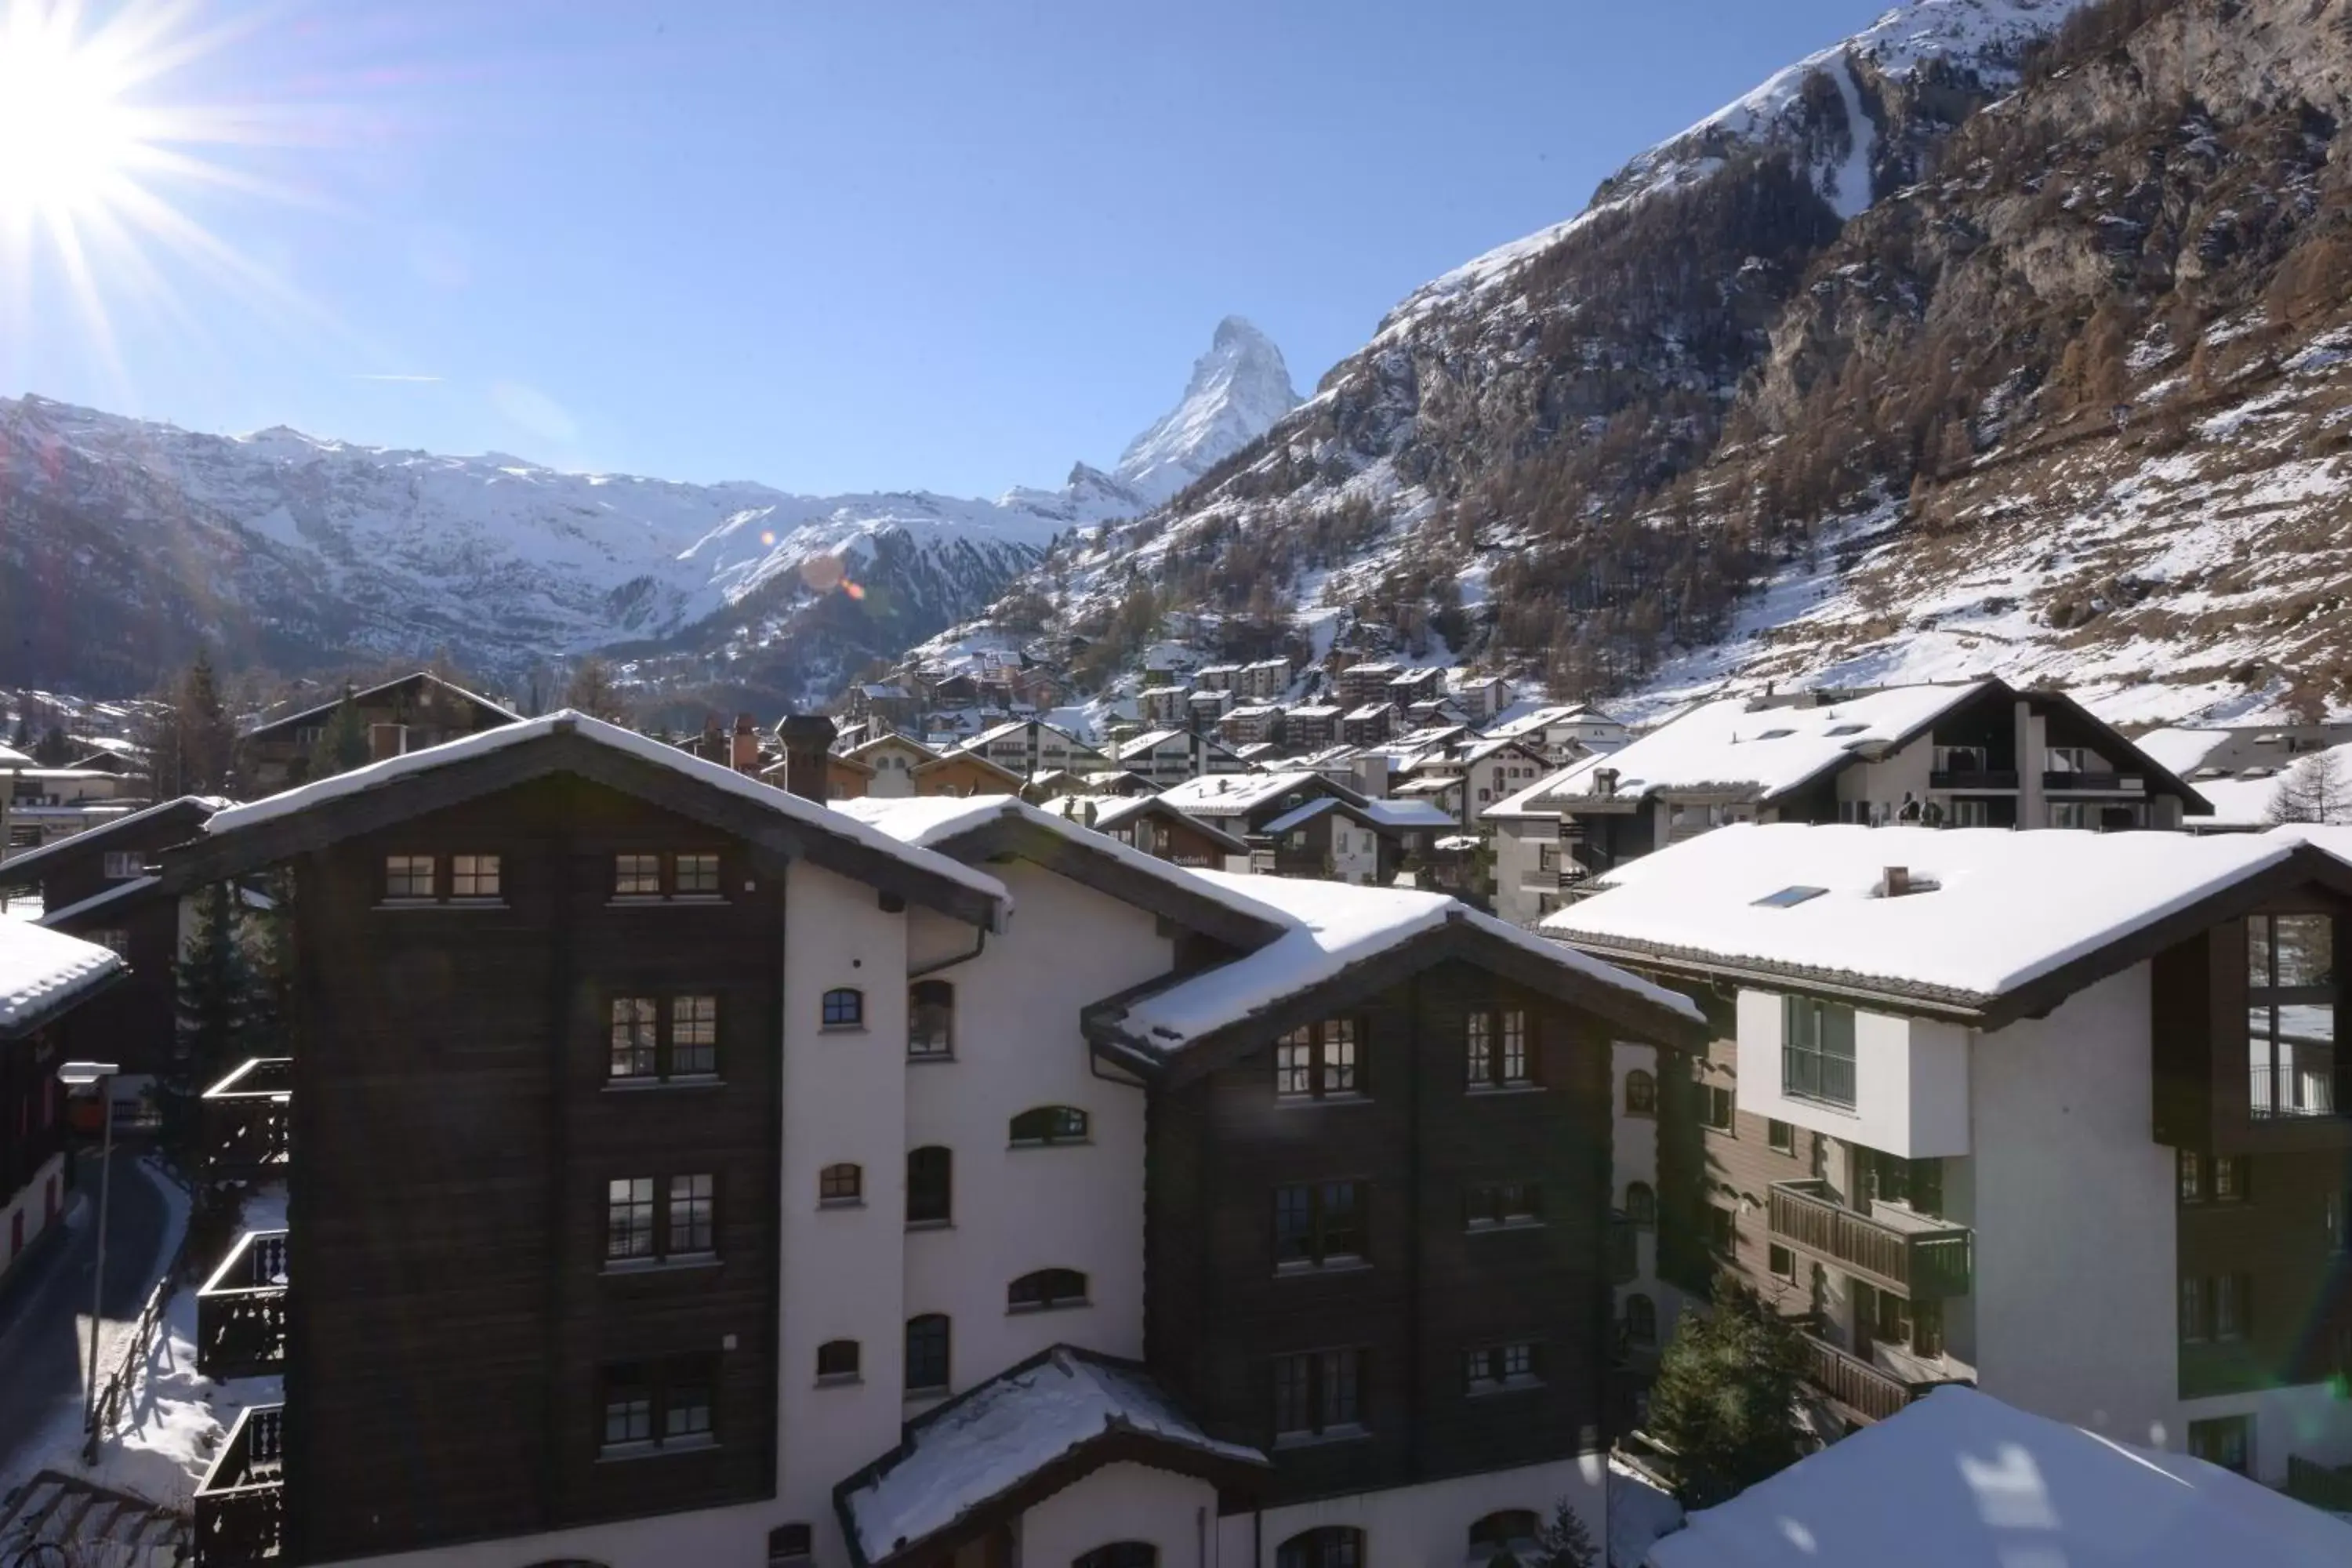 Winter in Alpenhotel Fleurs de Zermatt